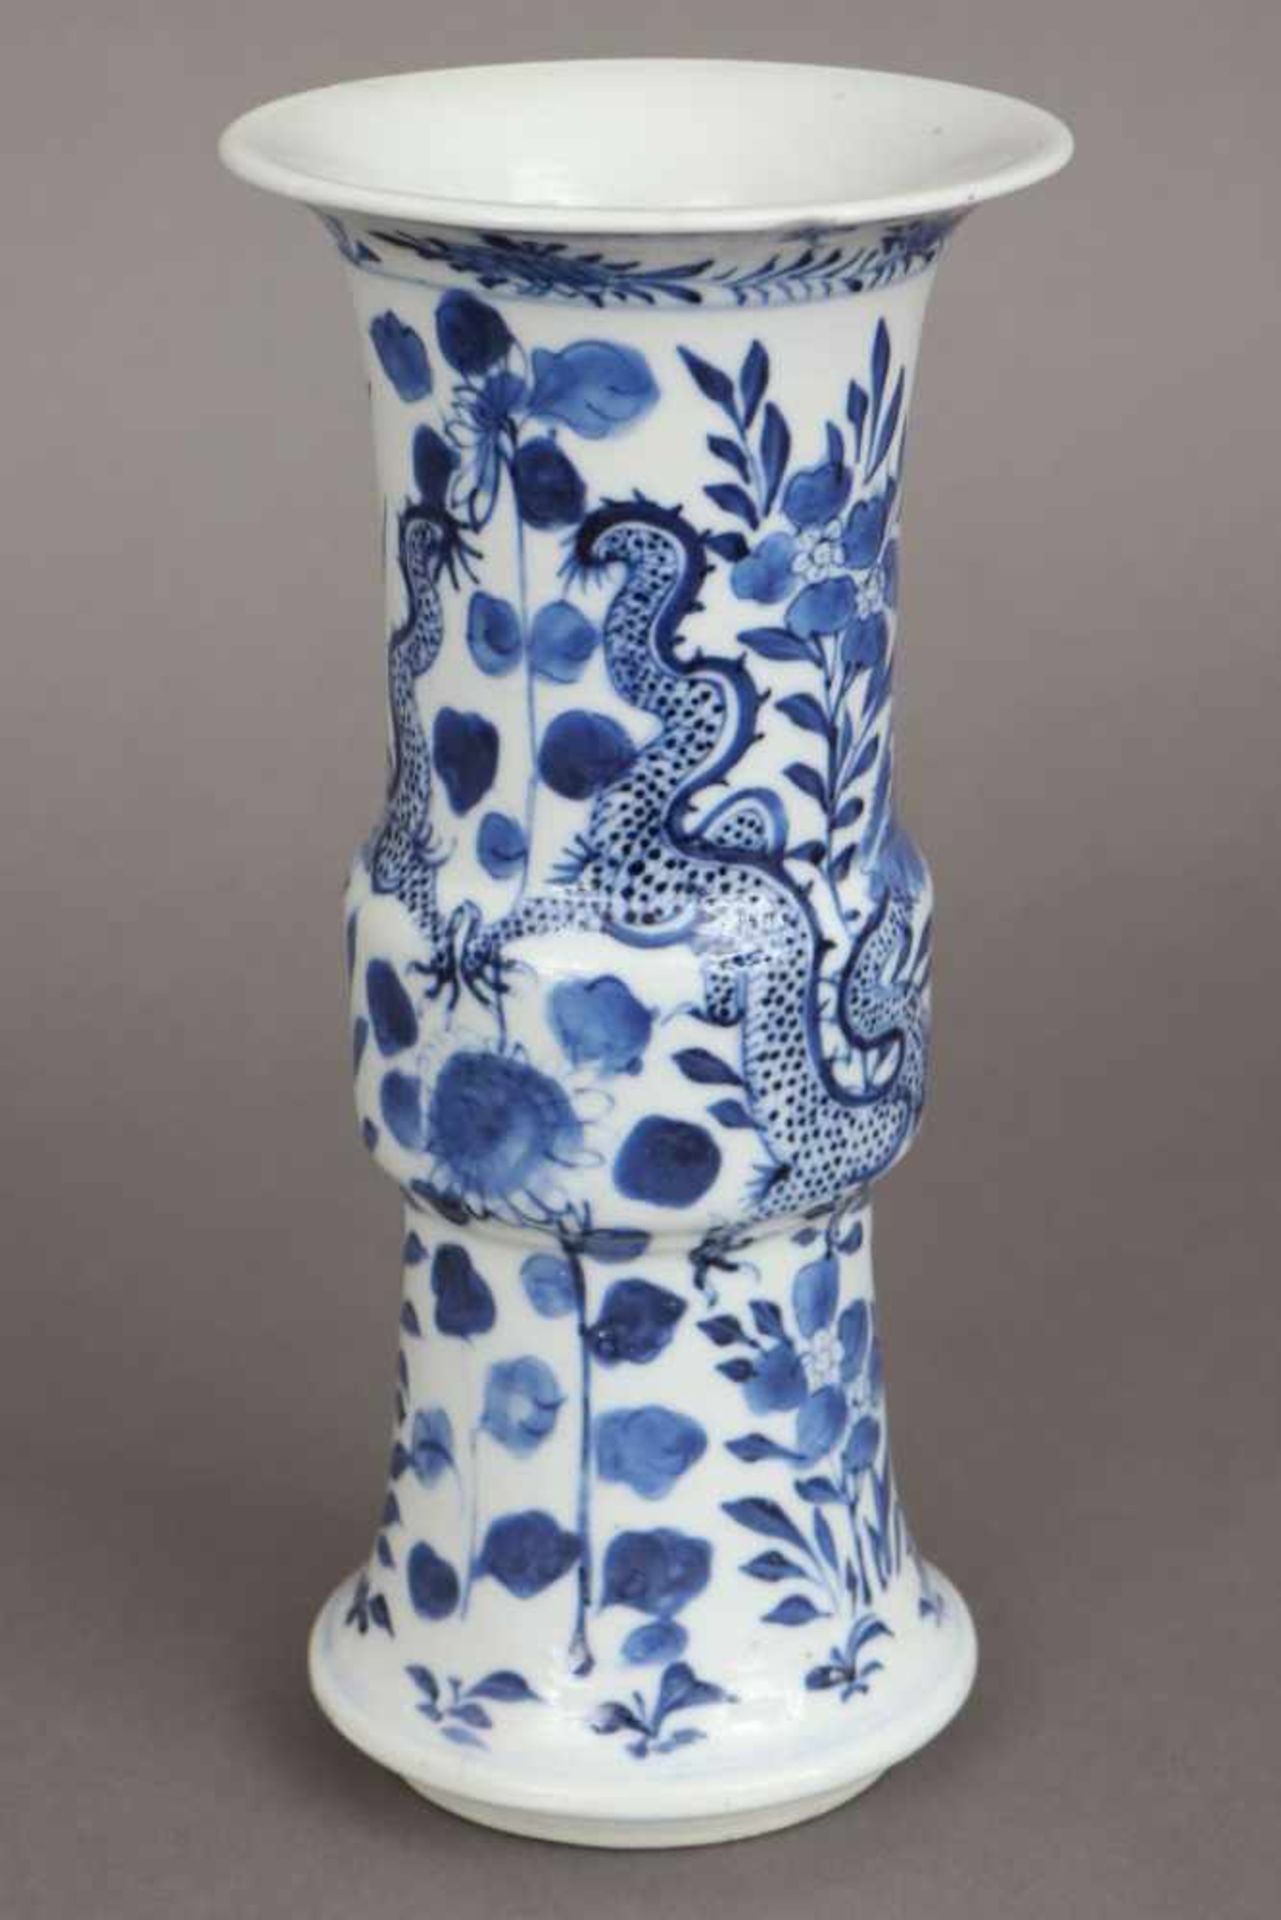 Chinesische Porzellanvase in Gu-Form Blaumalerei auf hellem Grund ¨Drache und Pflanzen¨, - Bild 2 aus 6